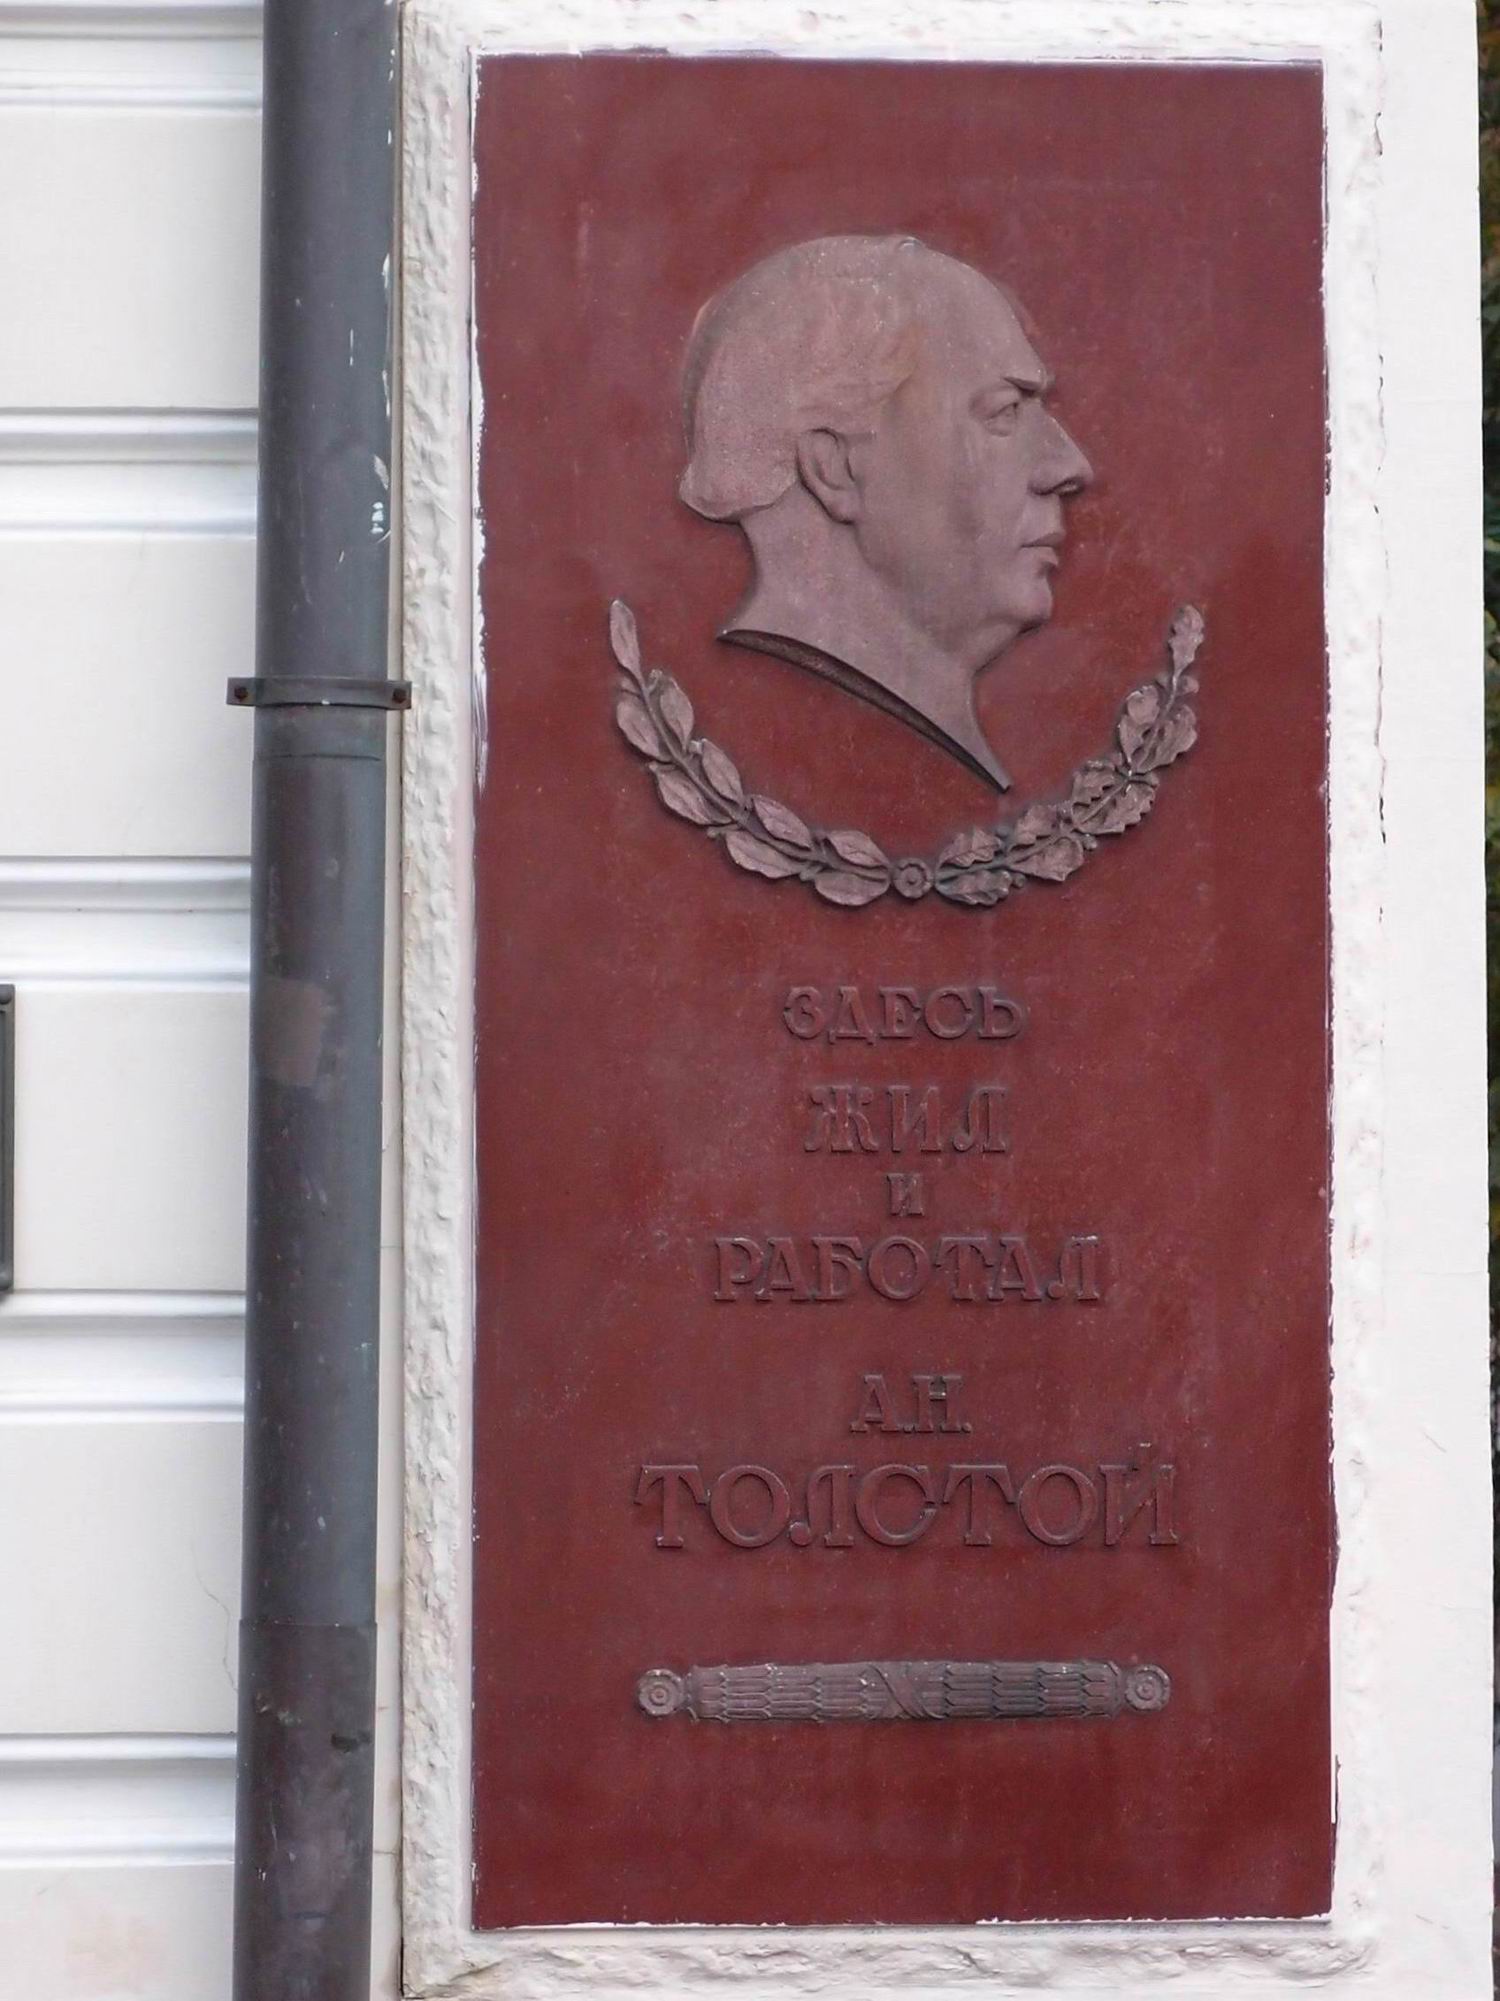 Мемориальная доска Толстому А.Н. (1883-1945), ск. С.Д.Меркуров, арх. И.А.Француз, на улице Спиридоновка, дом 2/6, открыта 3.7.1957.